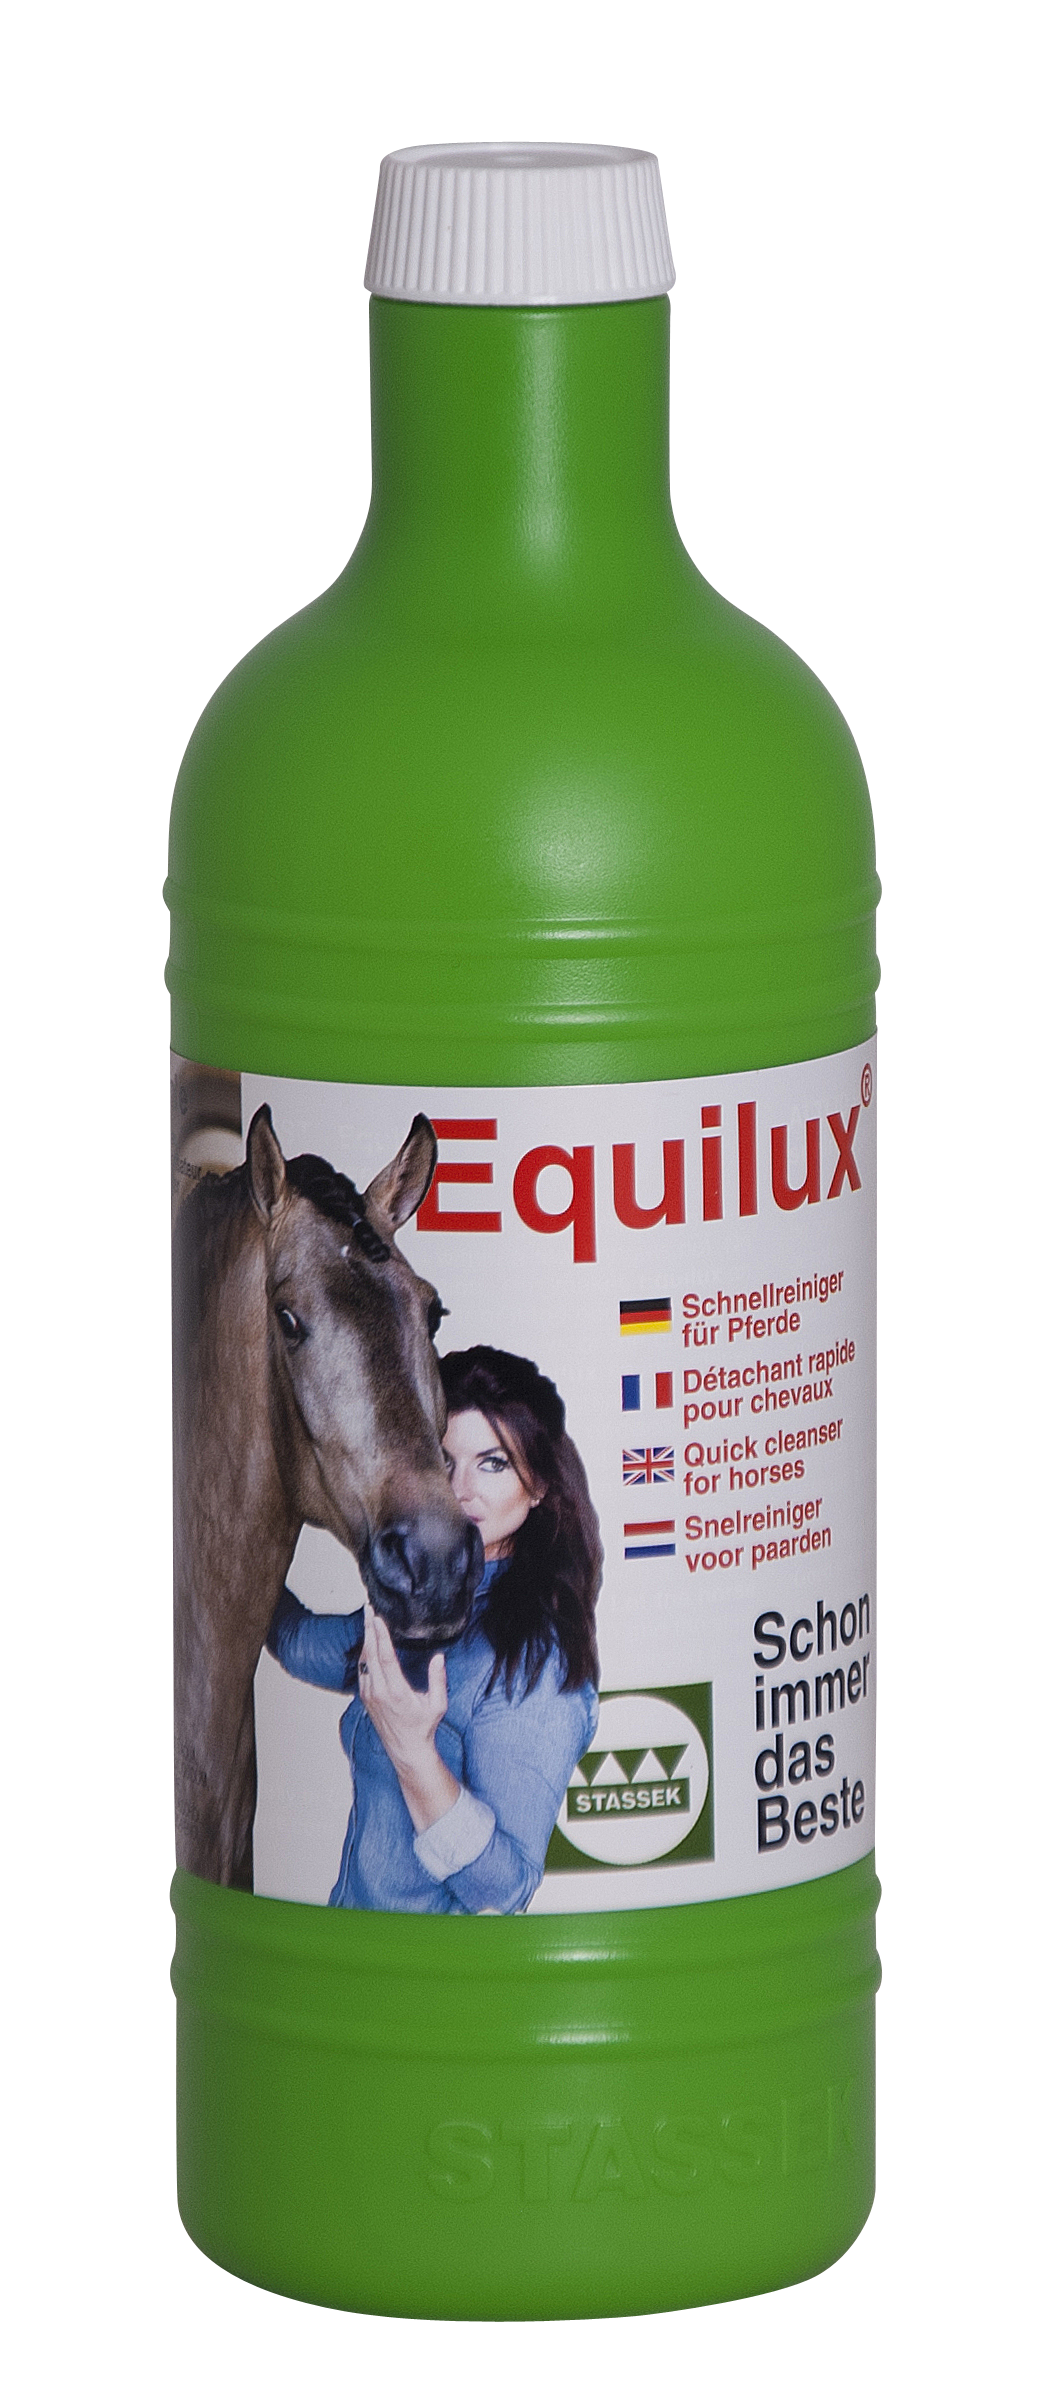 Stassek - Equilux® - Schnellreiniger - ideal für Schimmel und helle Pferde